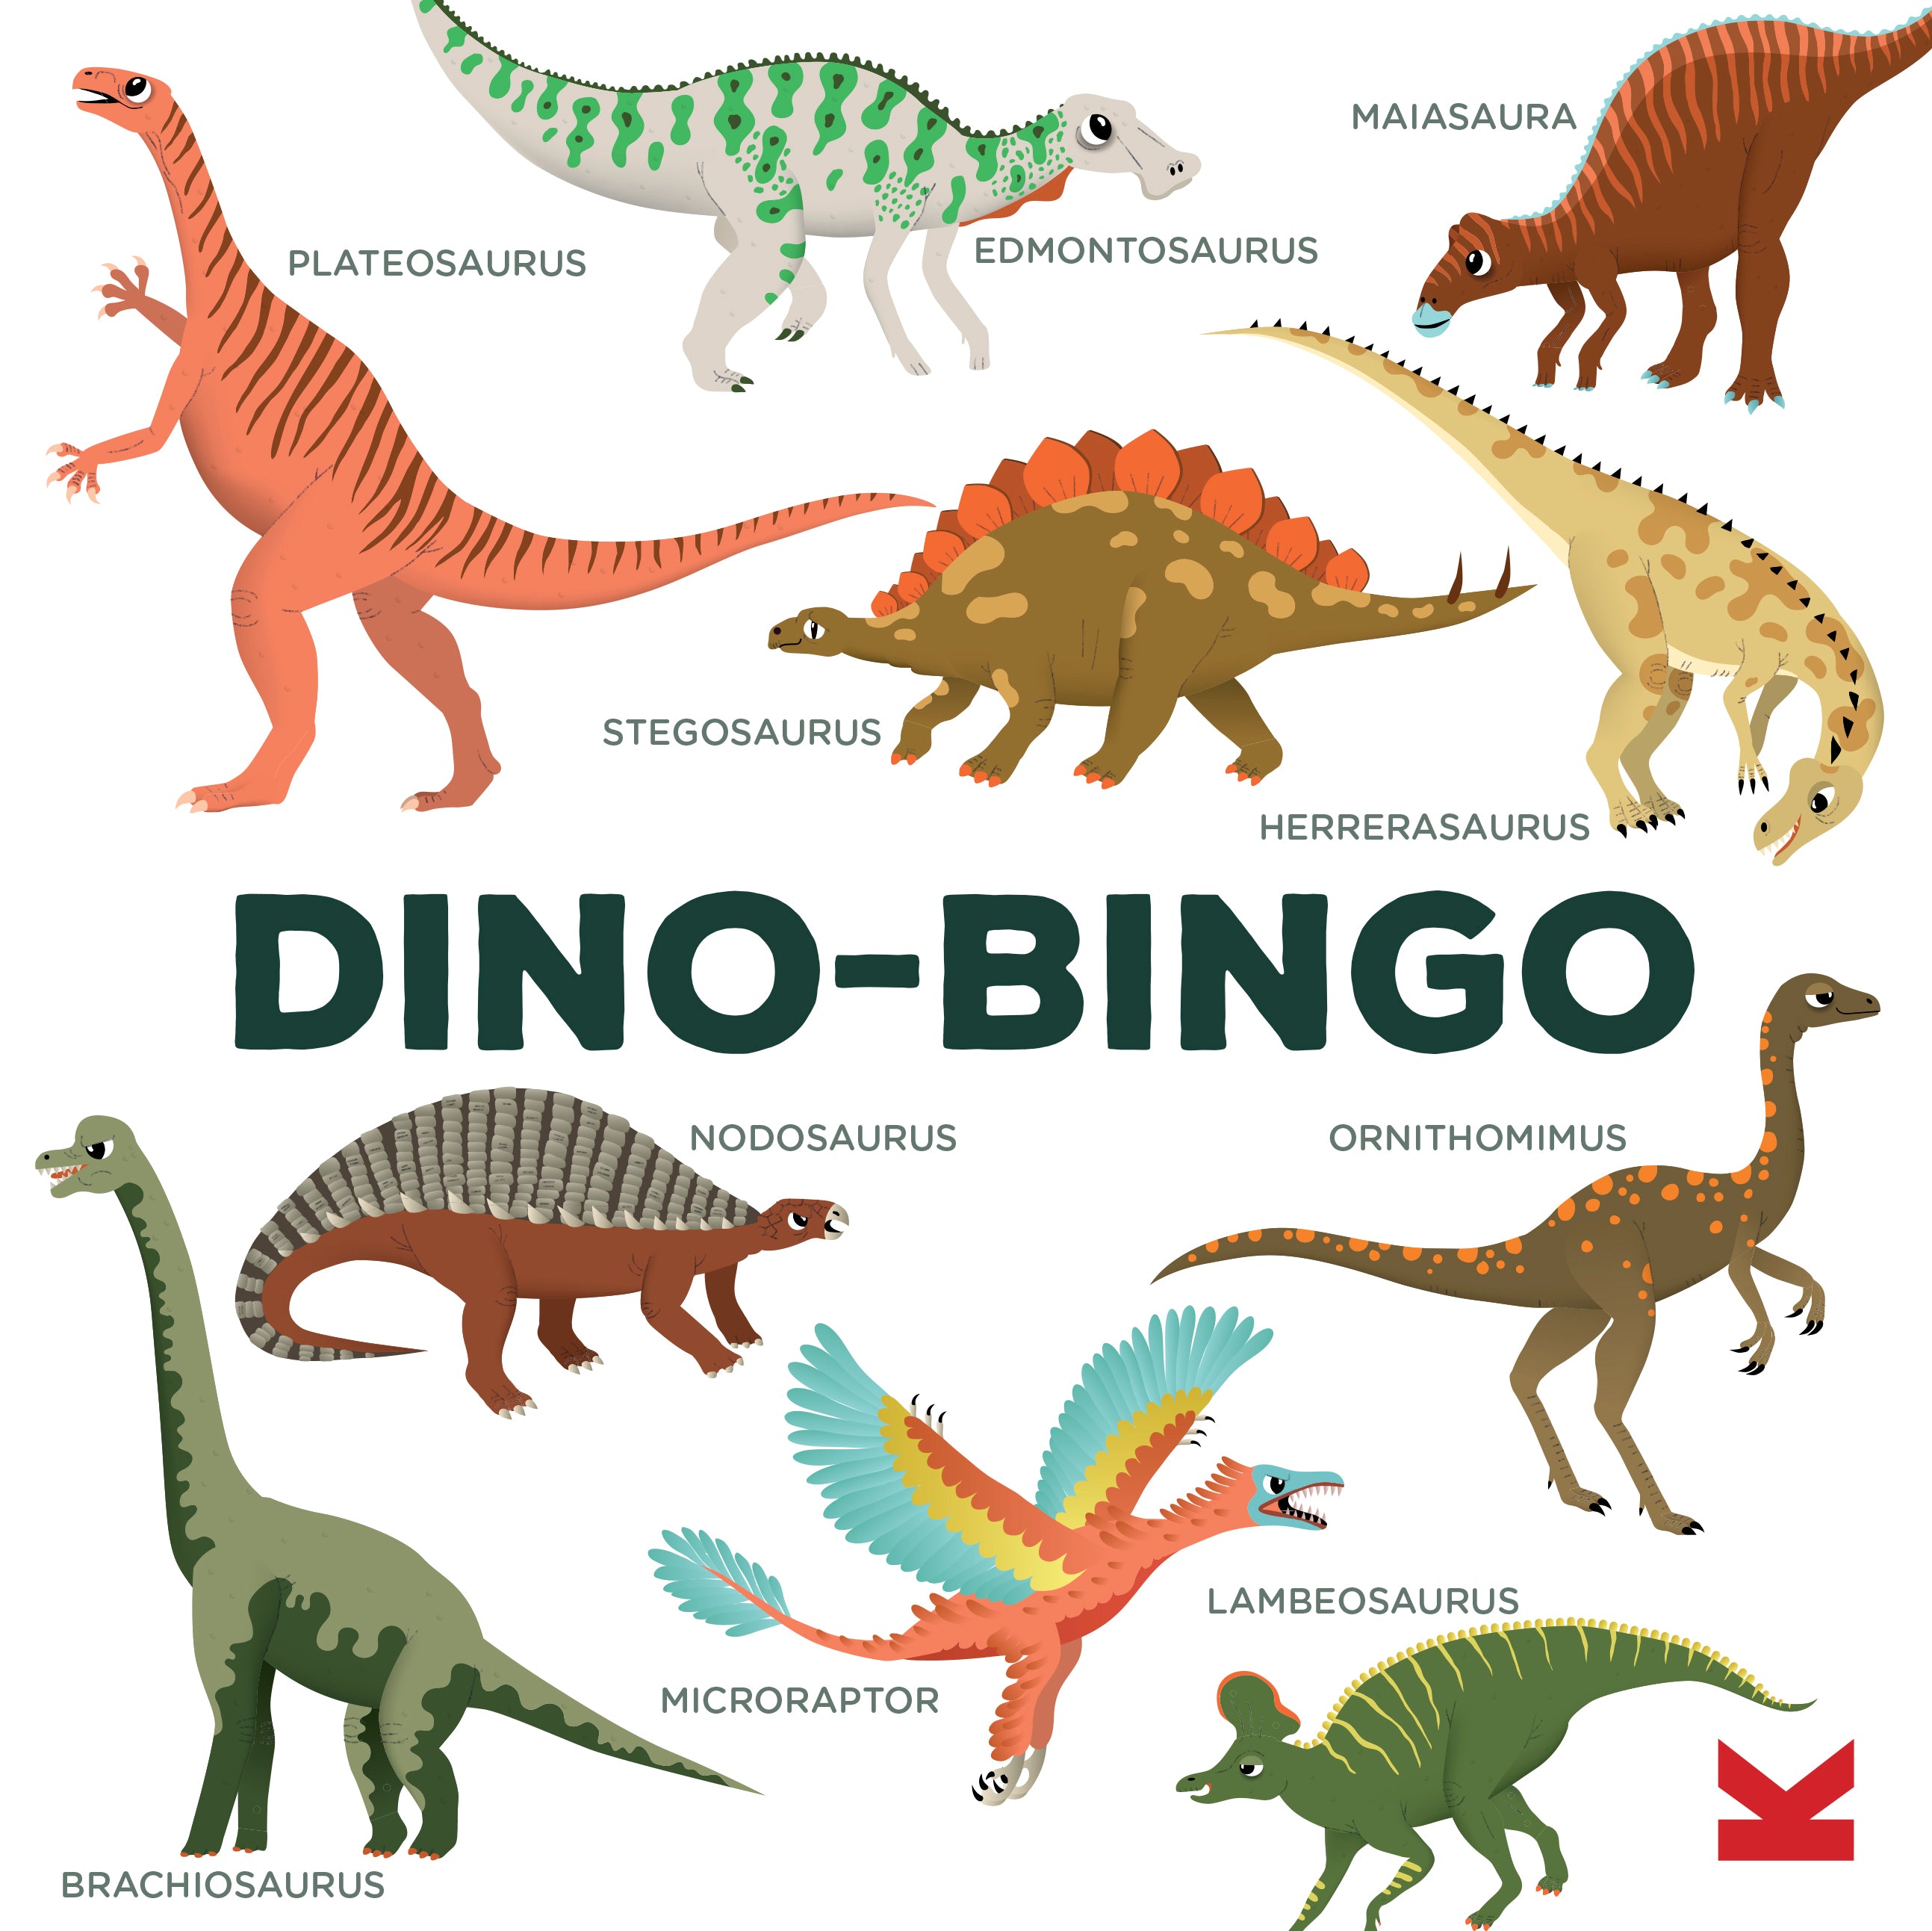 Dino-Bingo (DE)